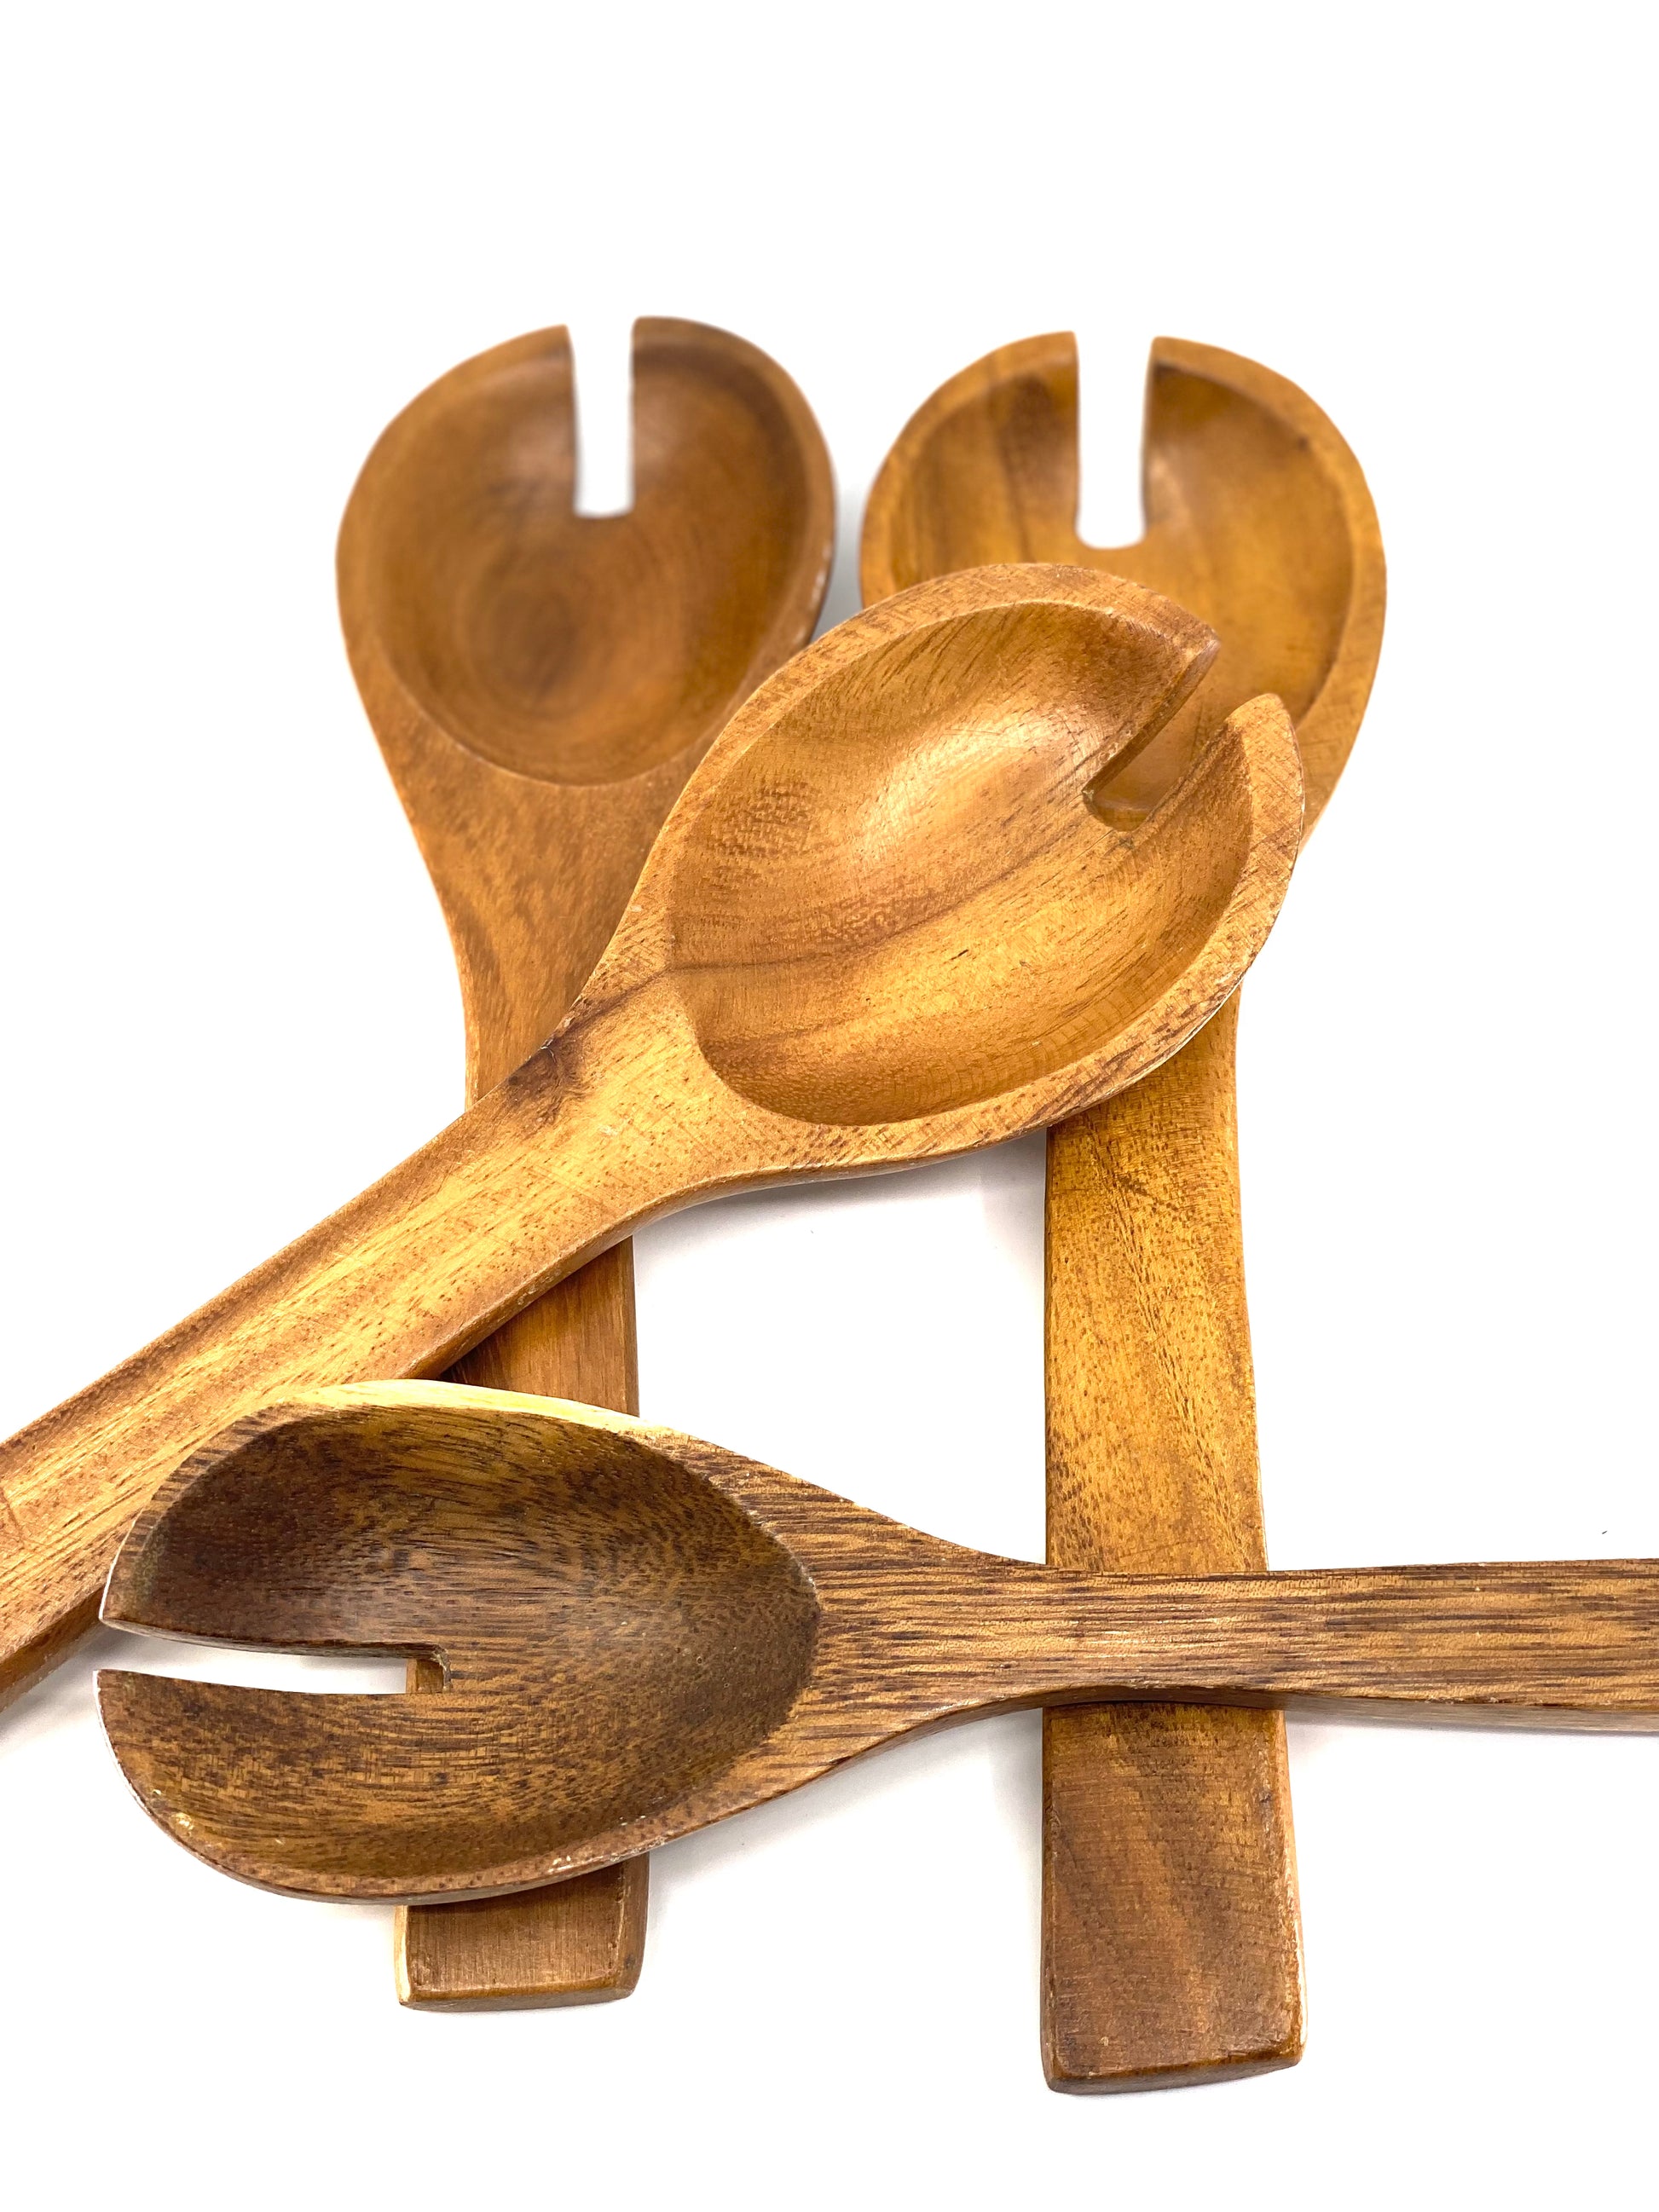 Vintage, MonkeyPod, Hand Carved, Serving Utensils, Wooden Spoons & Forks Sunsum®